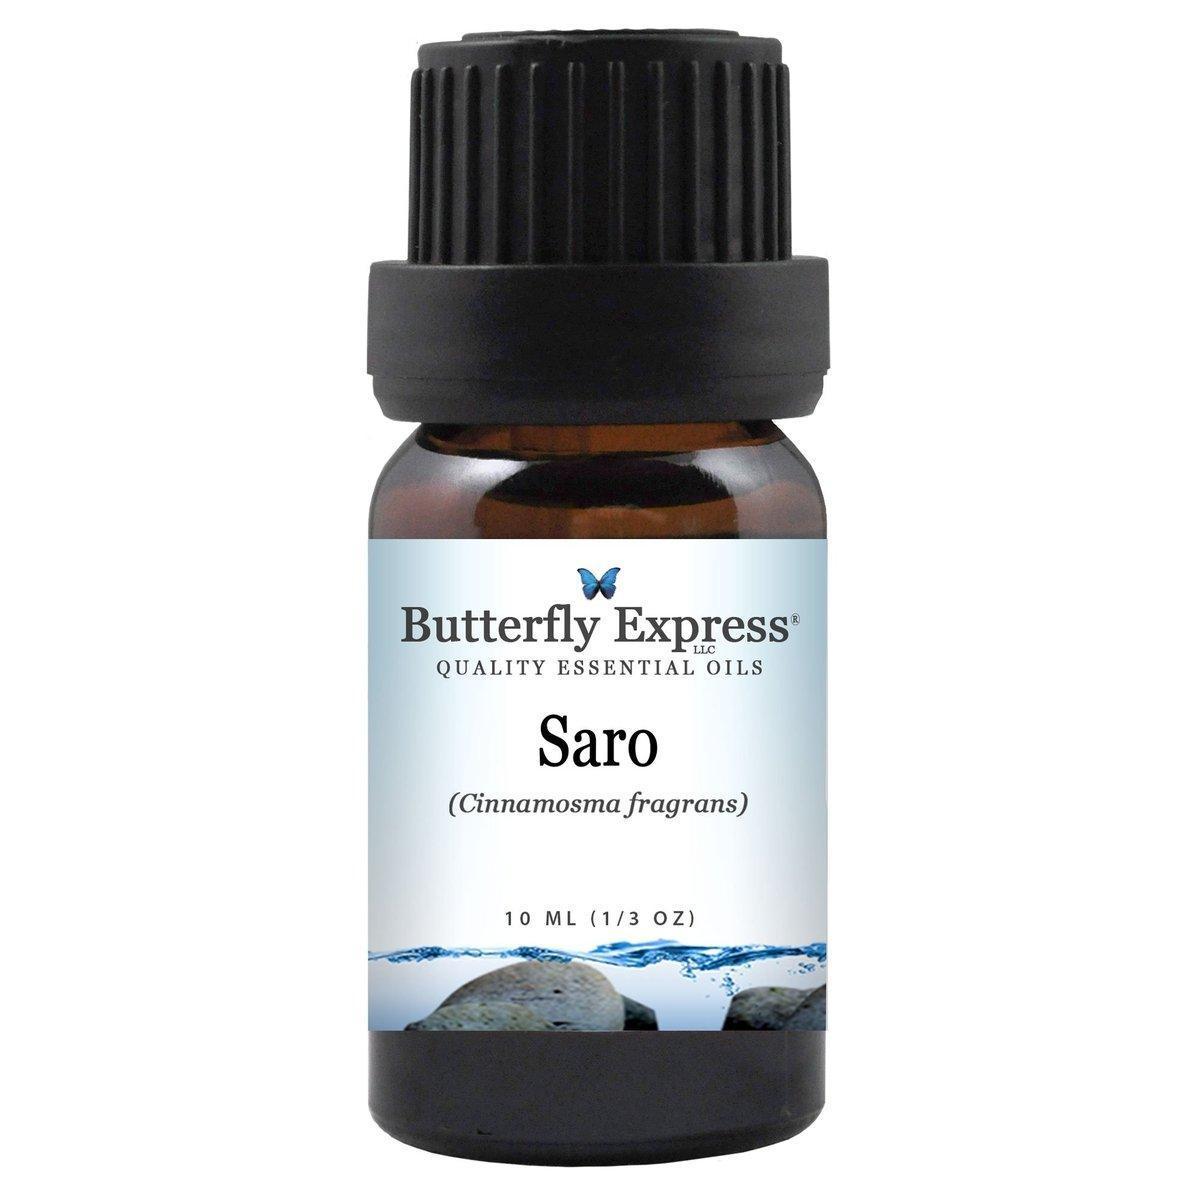 Saro essential oils